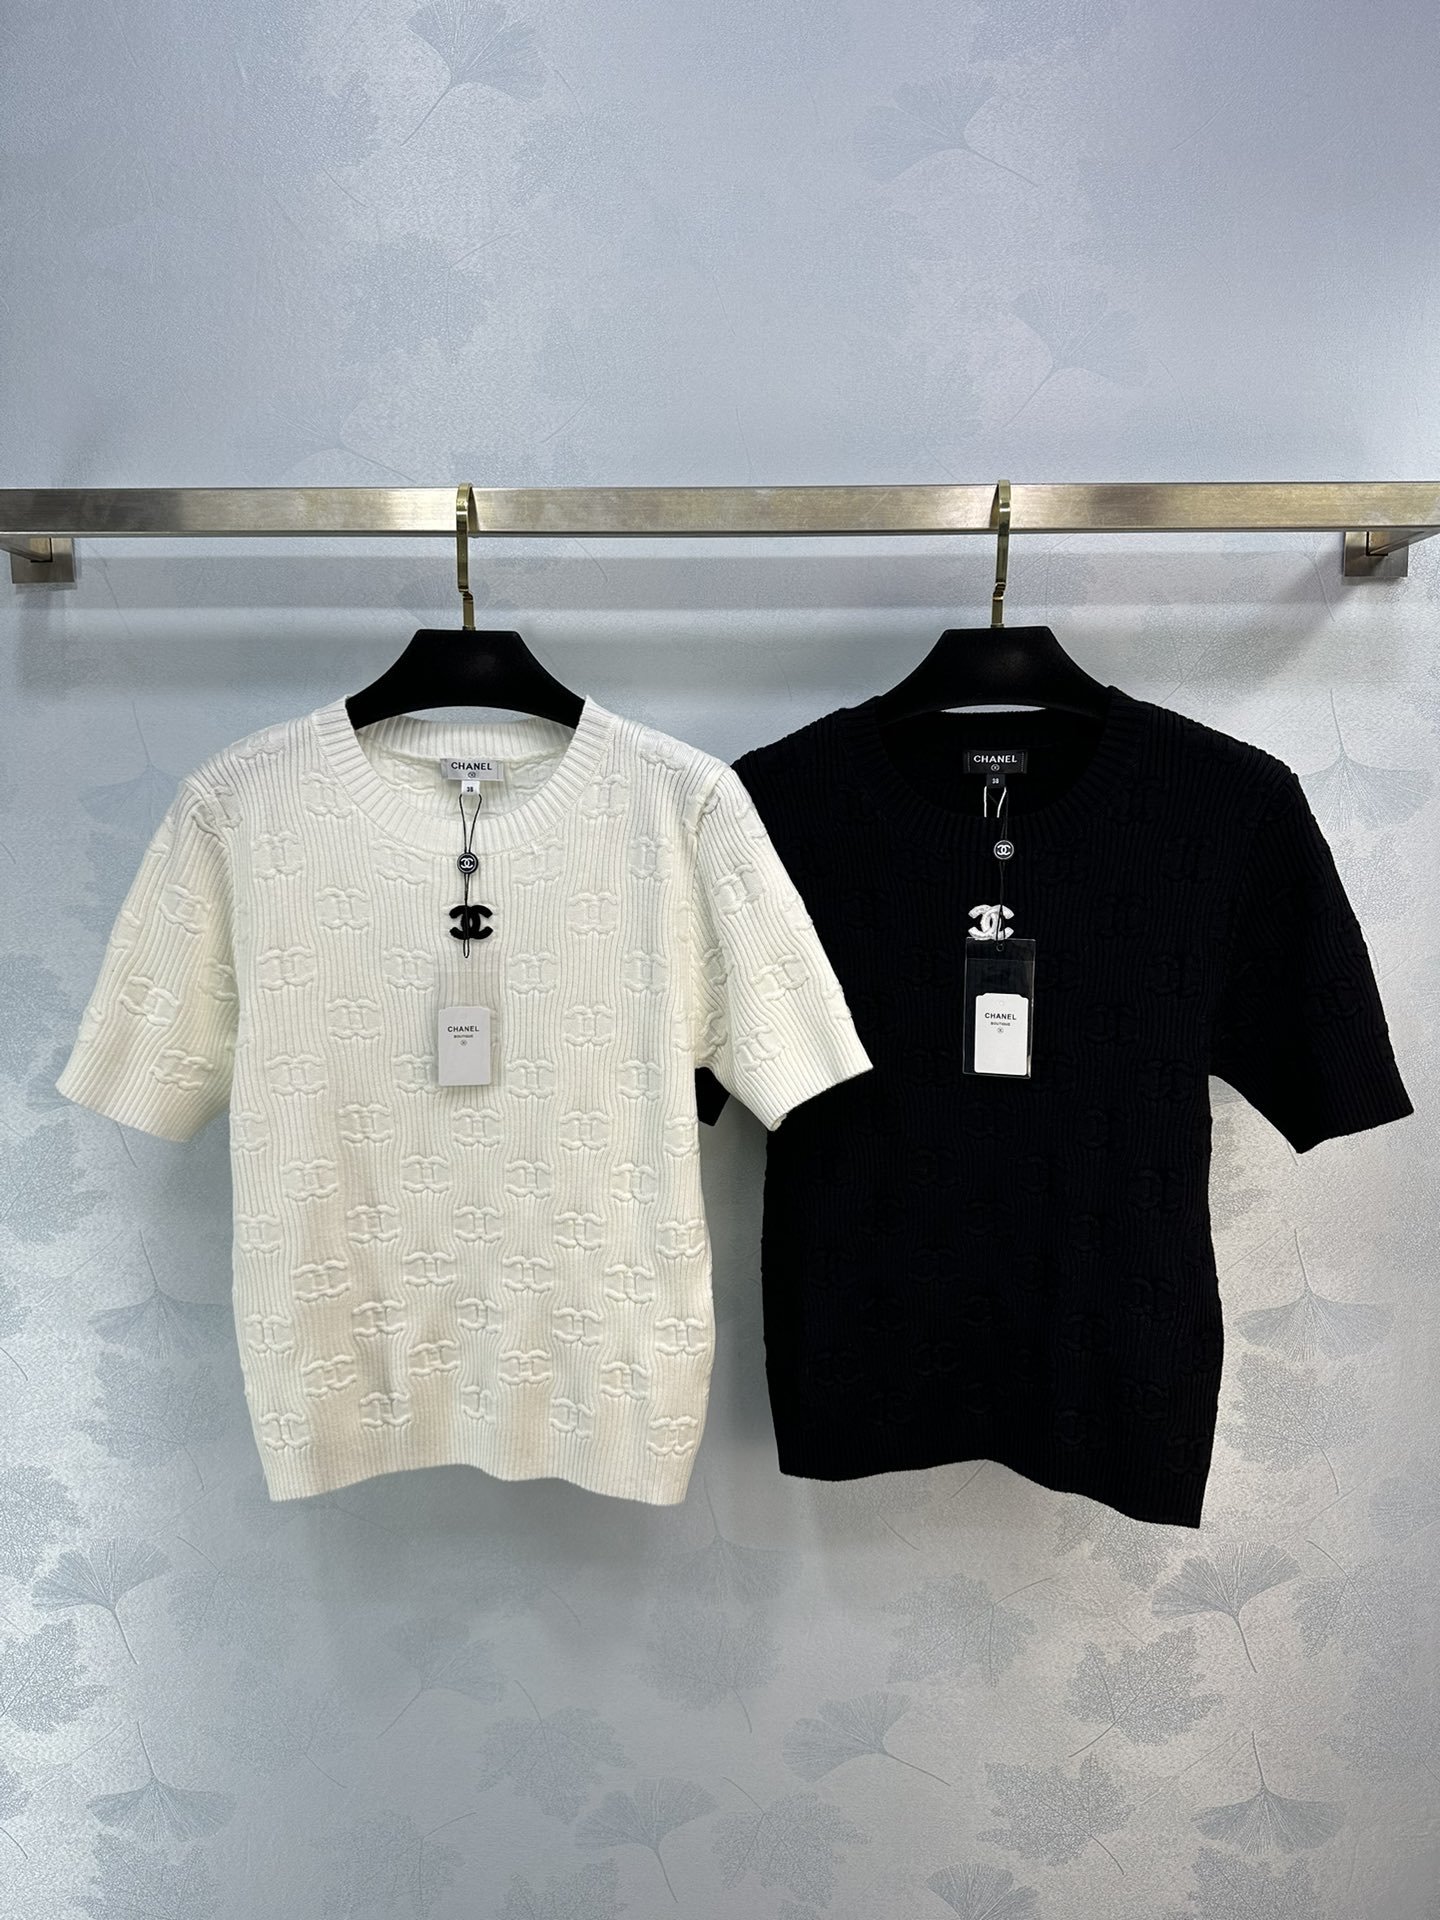 可换尺码！ chane*夏季新款针织上衣 极简黑白搭配logo和立体的浮雕设计 简约又高级 2色3码SML。zedqe